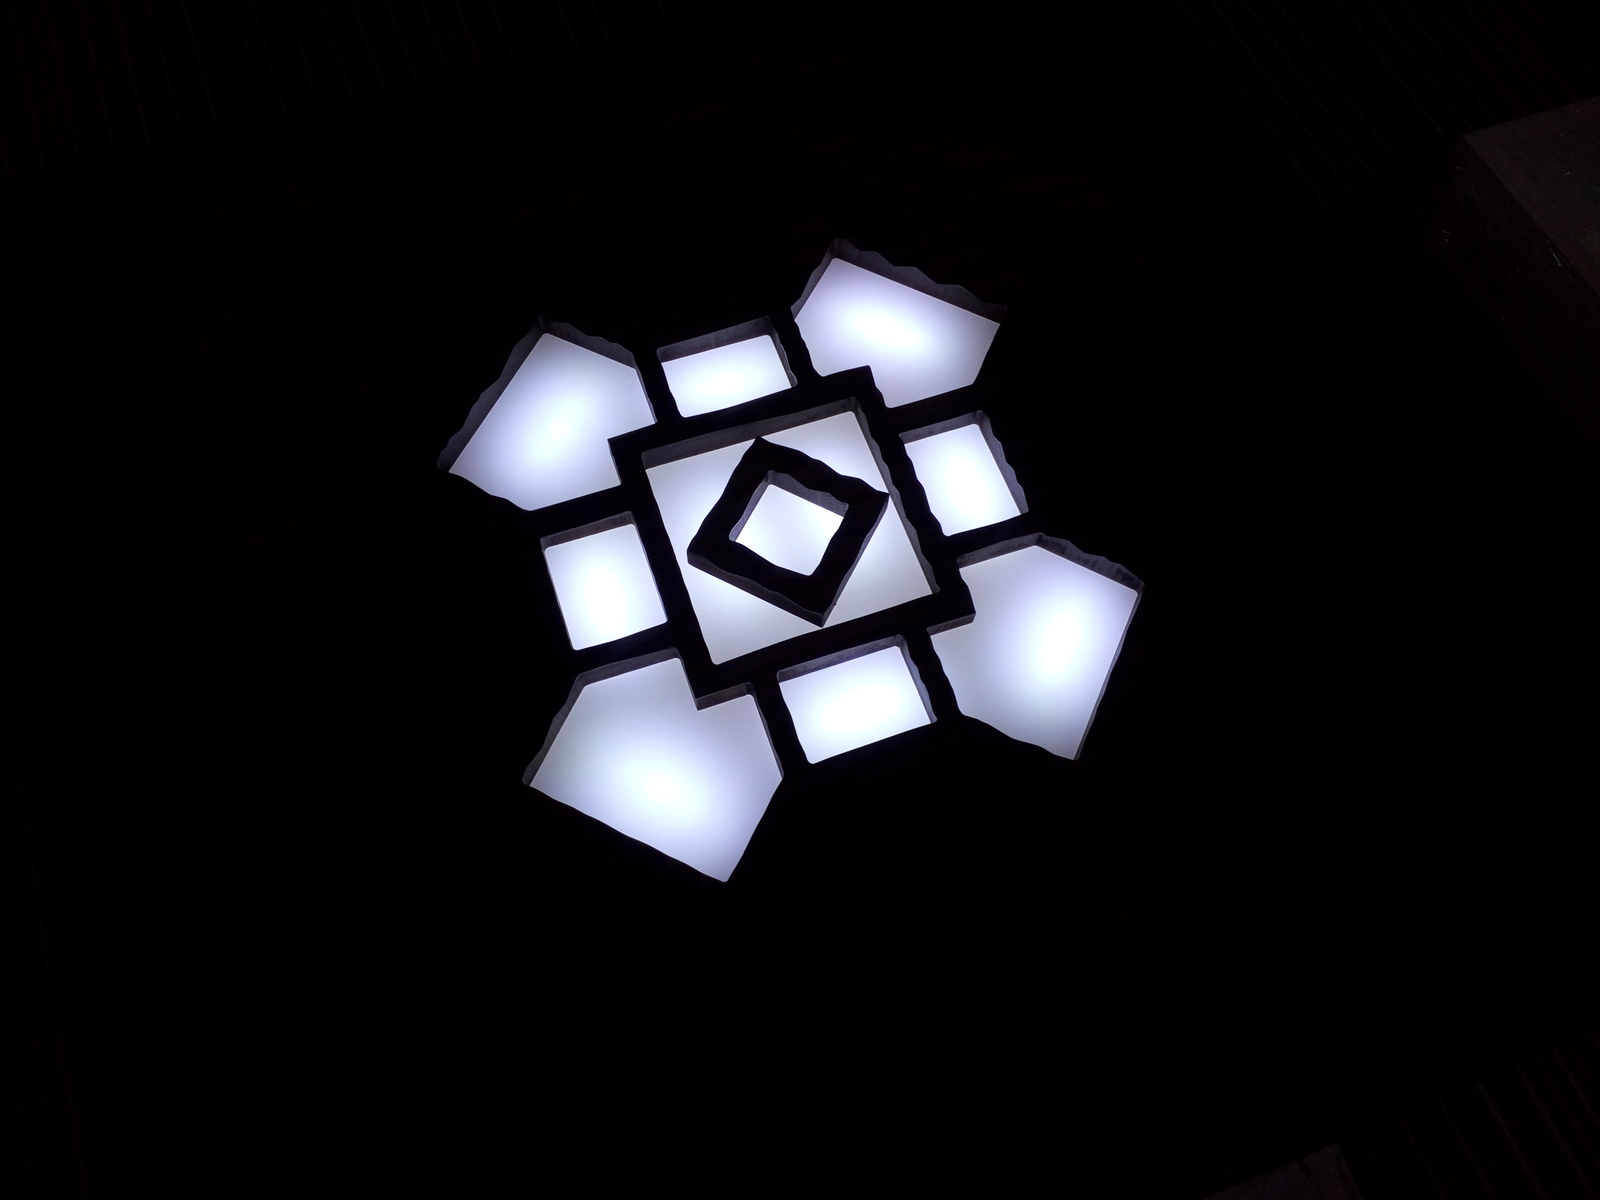  панели с подсветкой | Пикабу